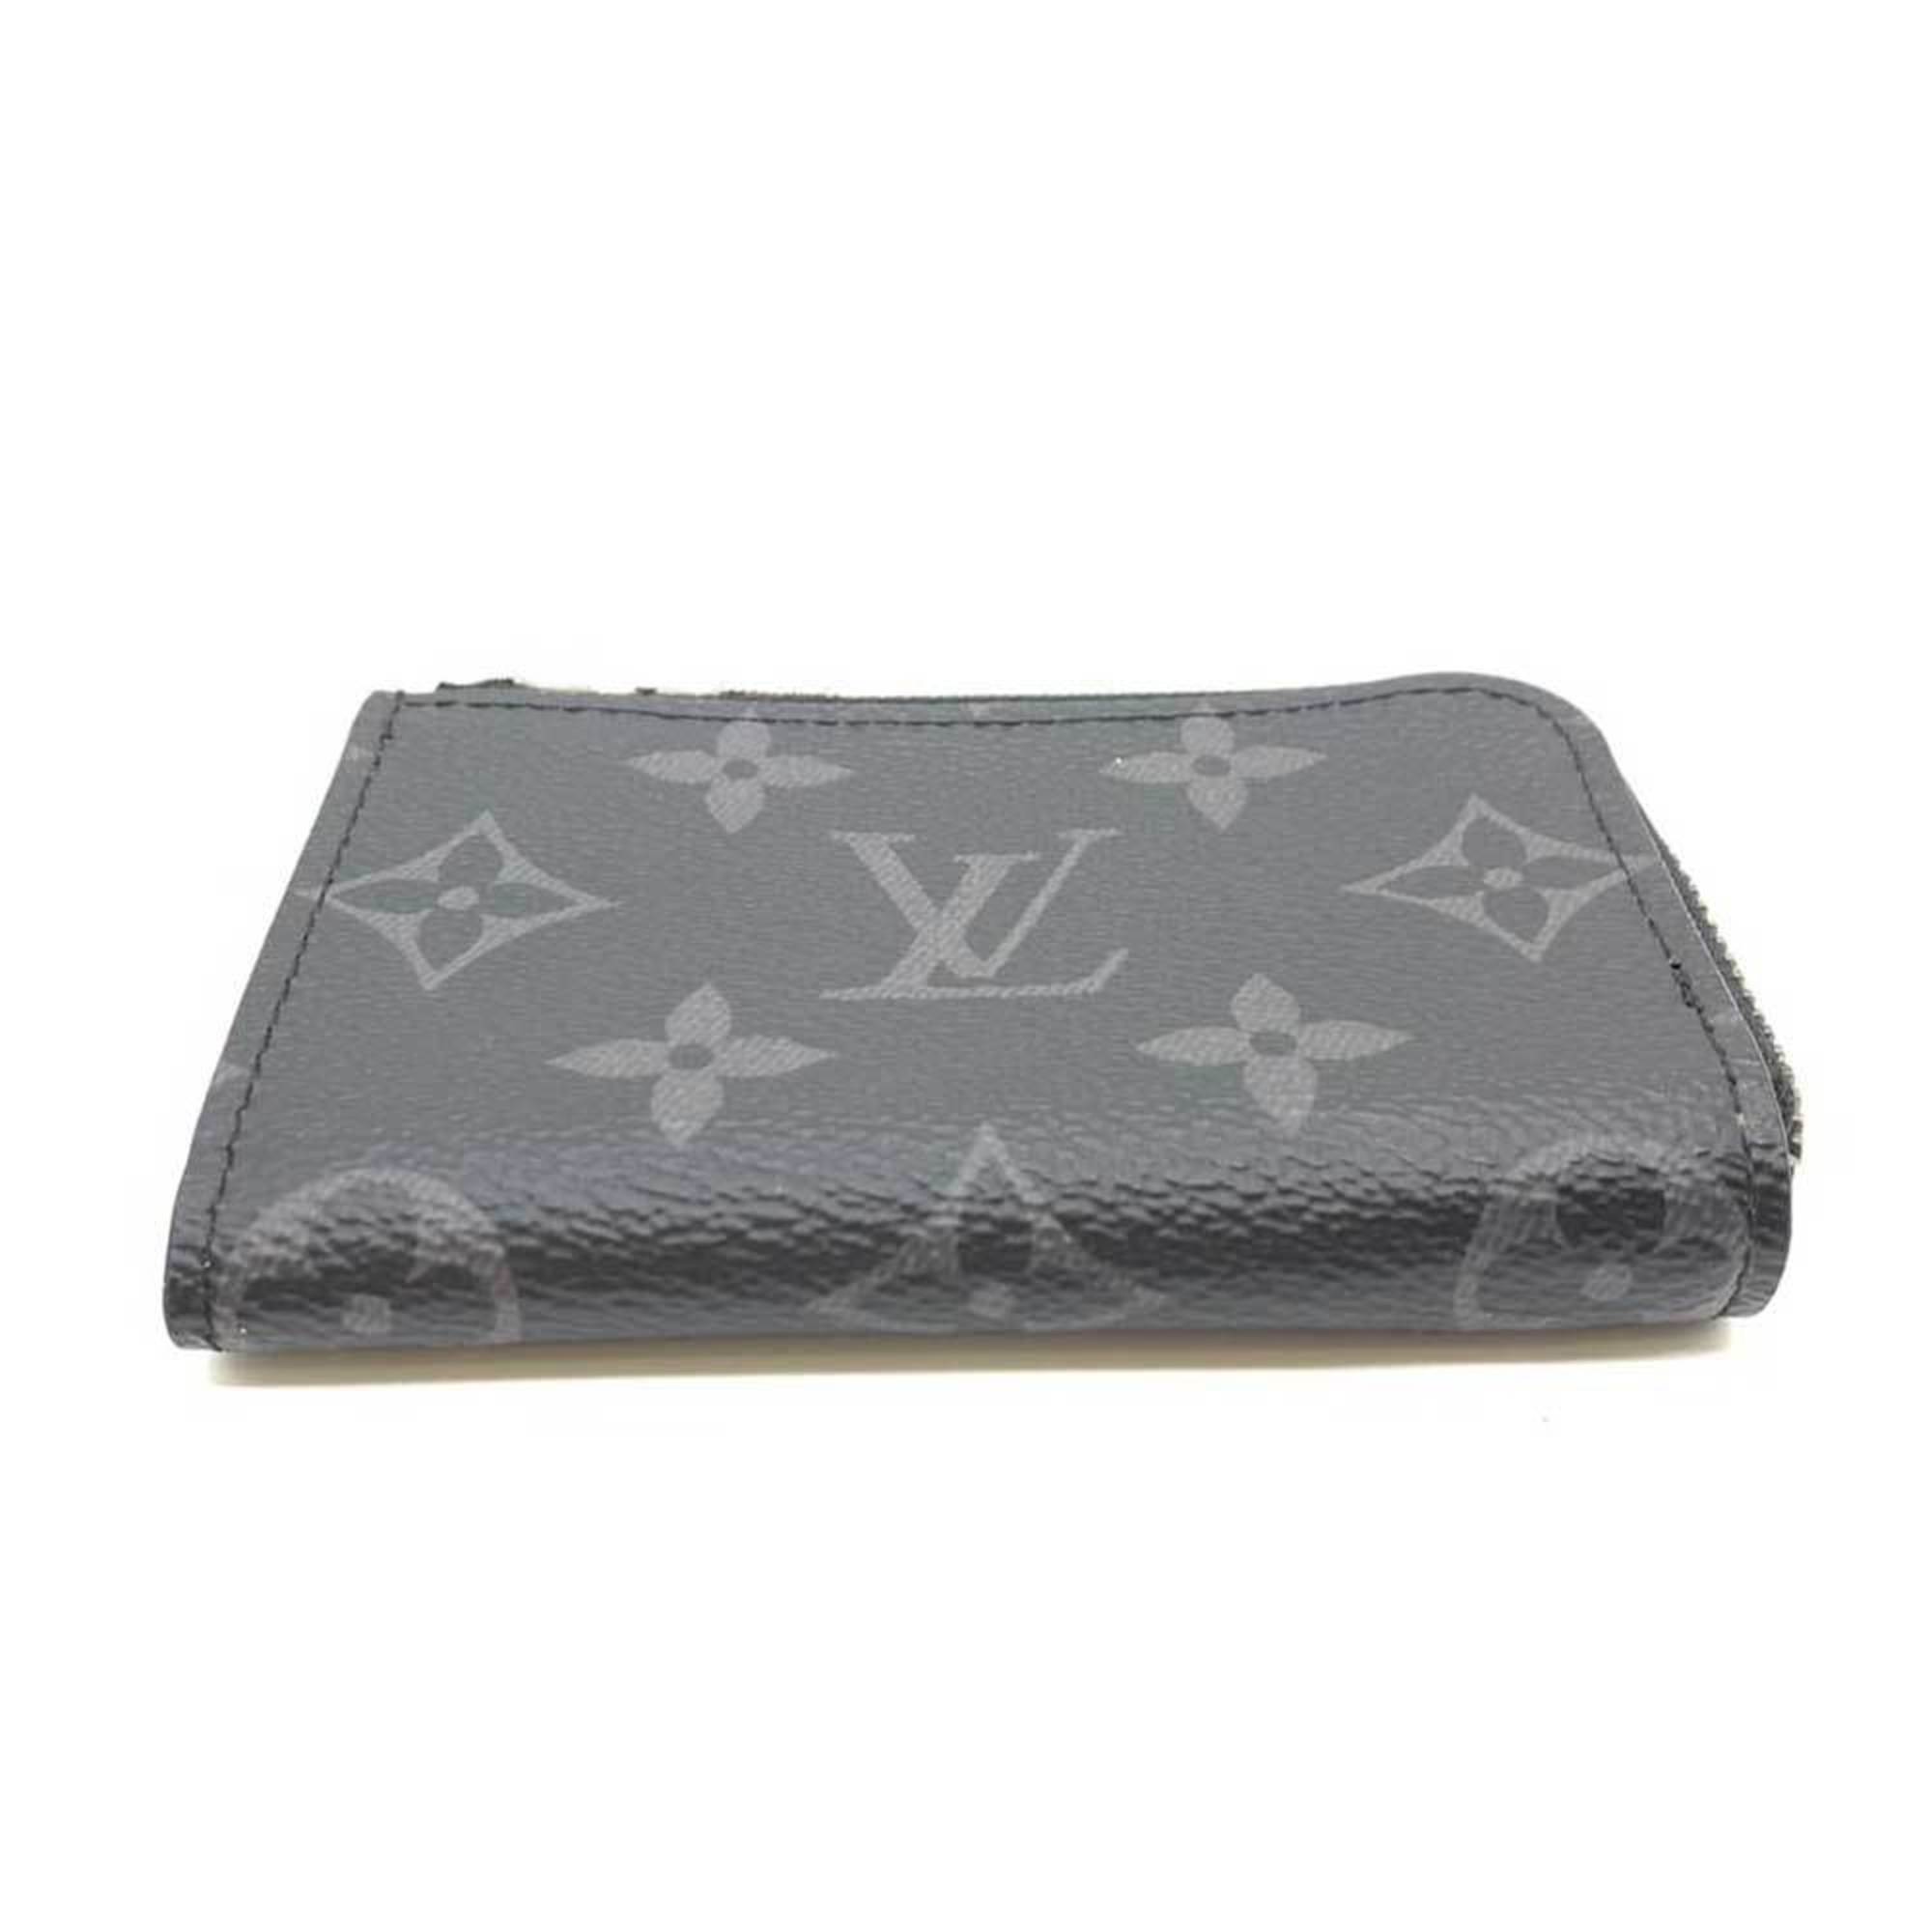 Louis Vuitton Wallet Porte Monédeur Black x Gray Coin Case Purse L-shaped Men's Monogram Eclipse PVC Leather M63536 LOUISVUITTON